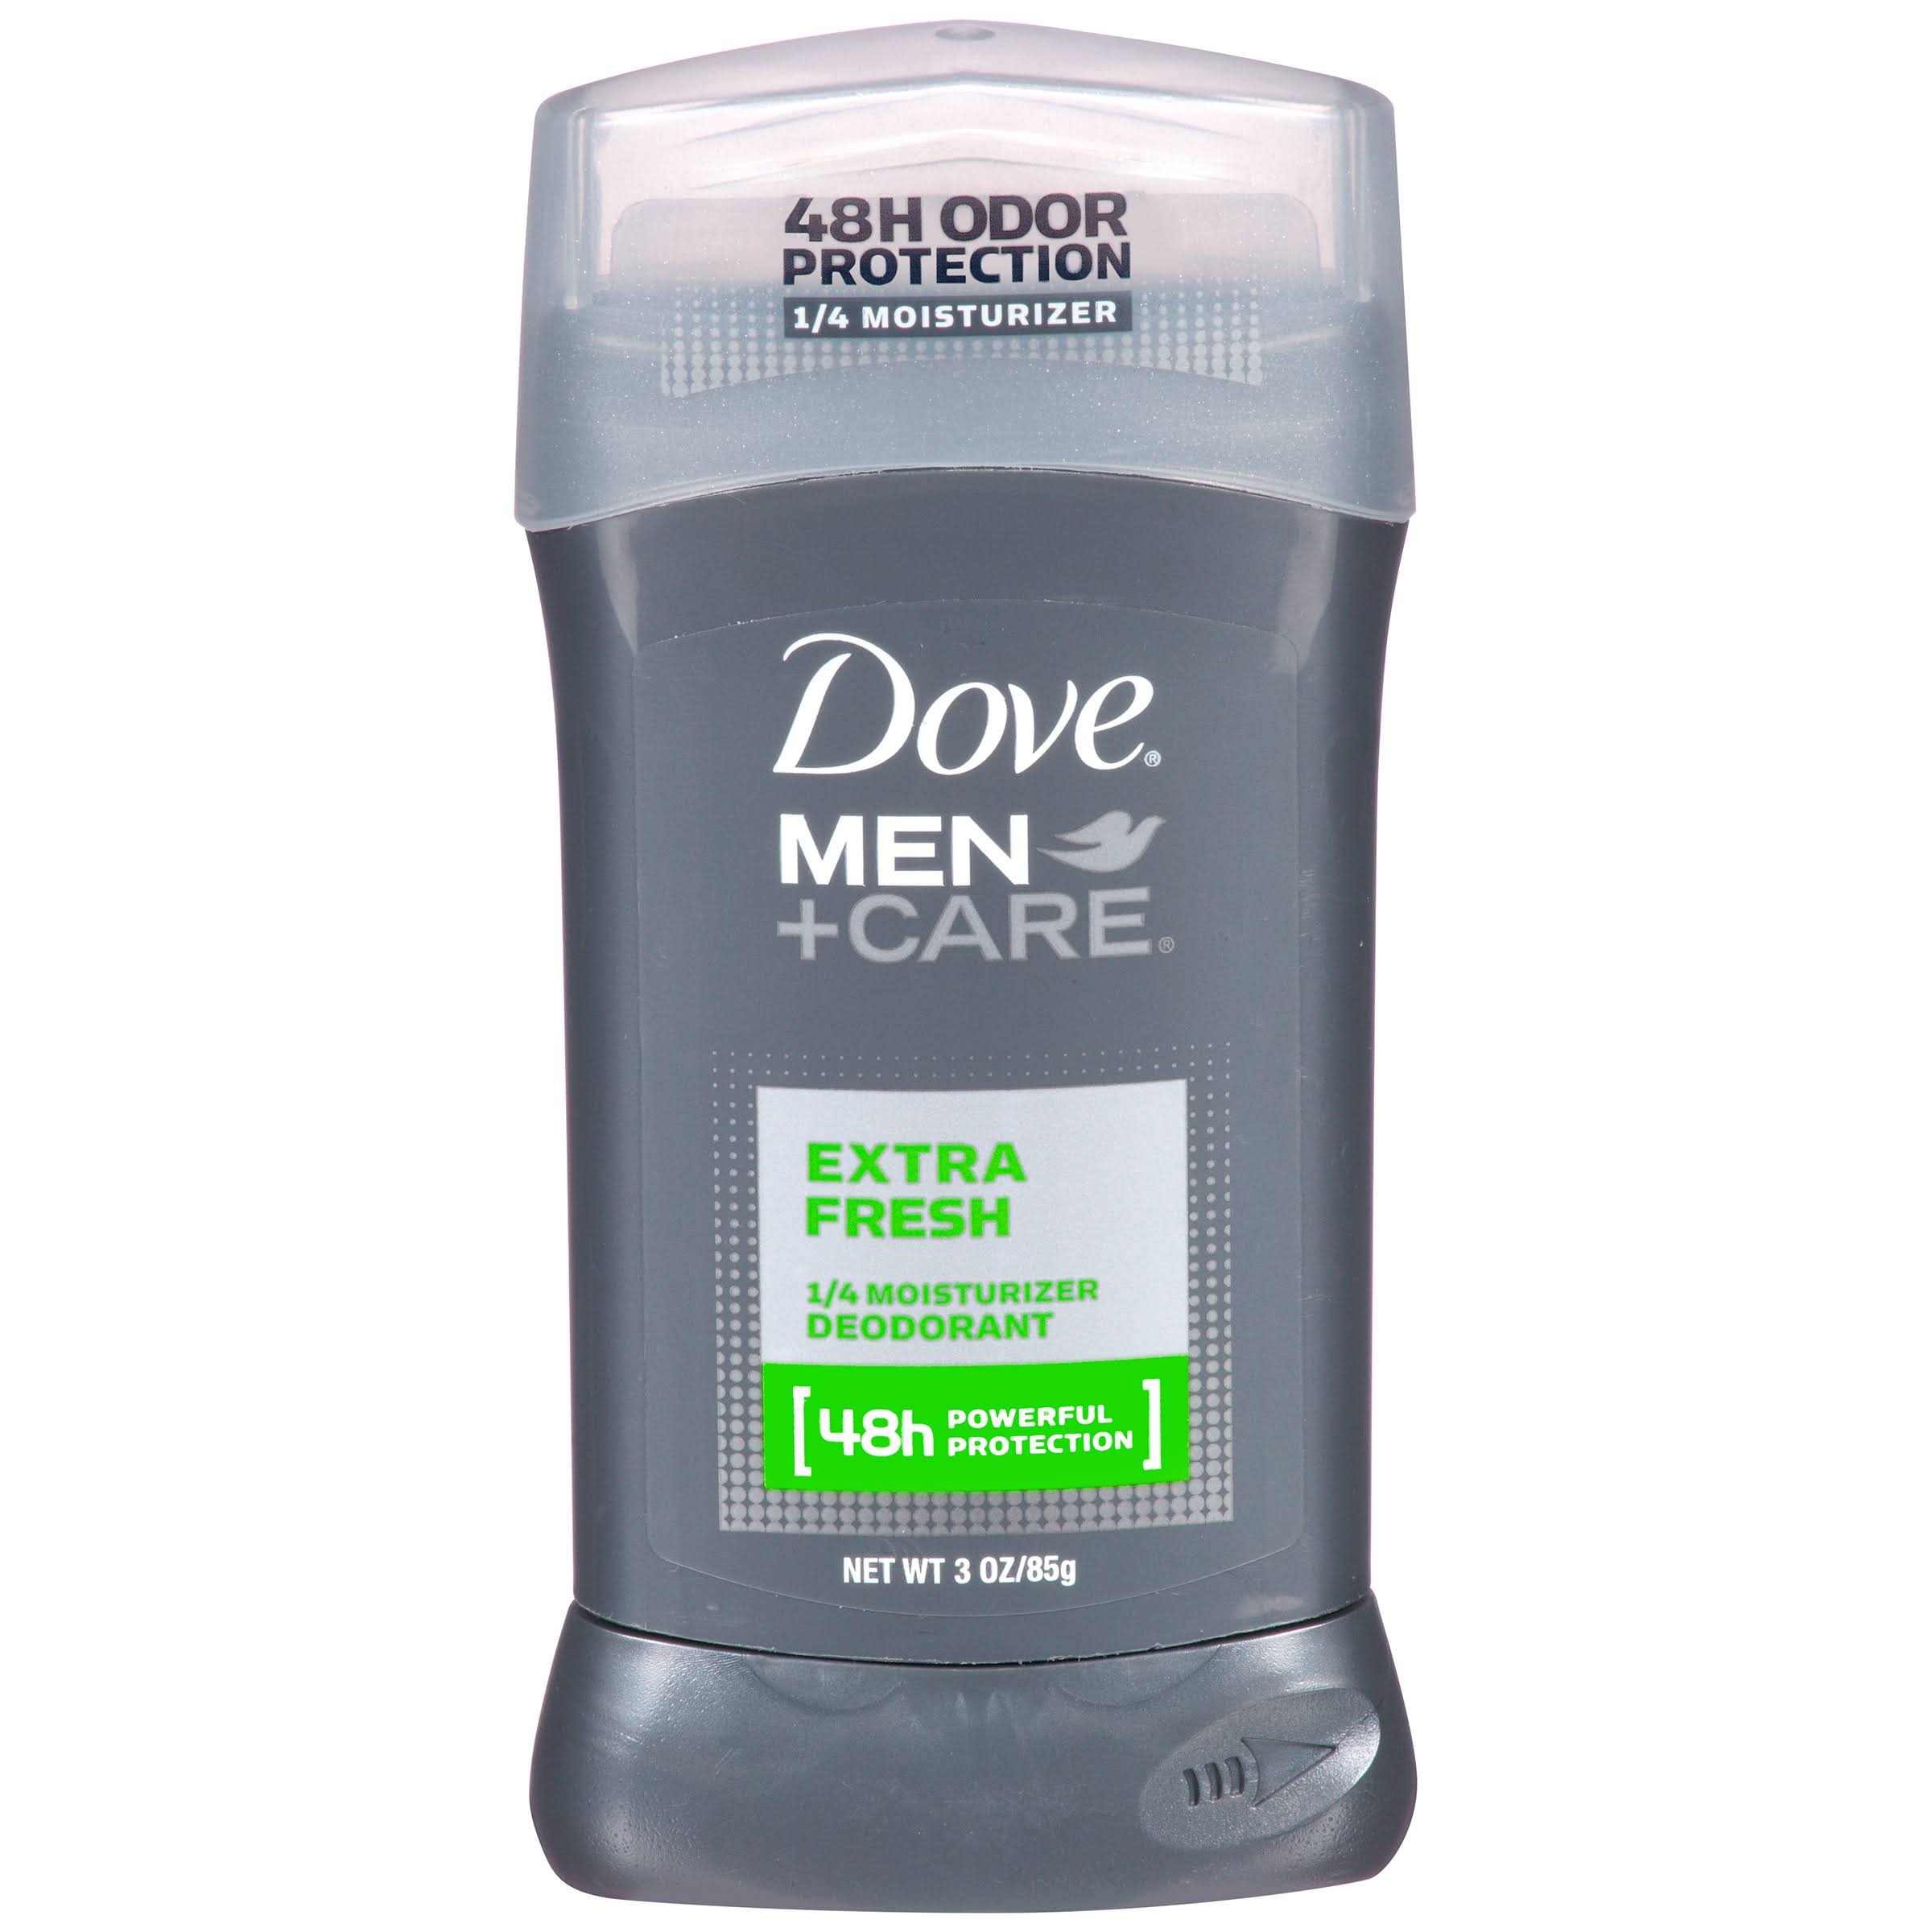 Dove Deoderant Men Plus Care Deodorant - Extra Fresh, 3oz